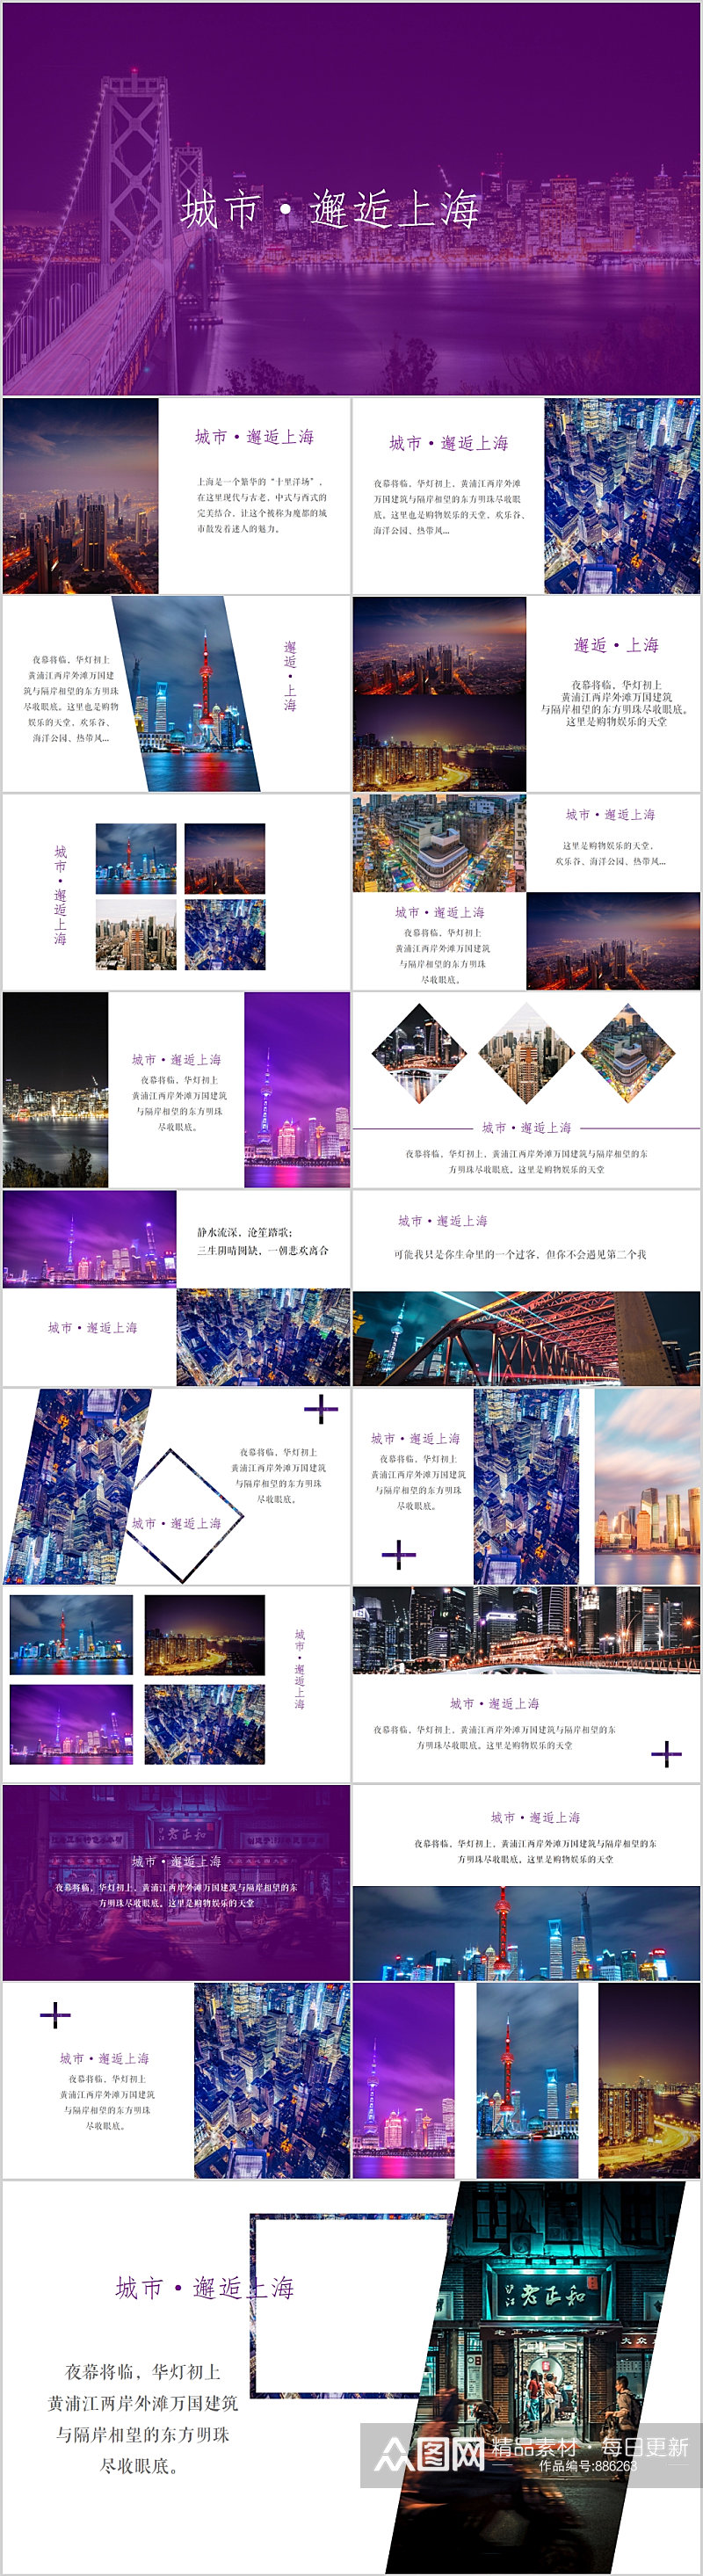 城市邂逅紫色简约上海旅游PPT模版素材